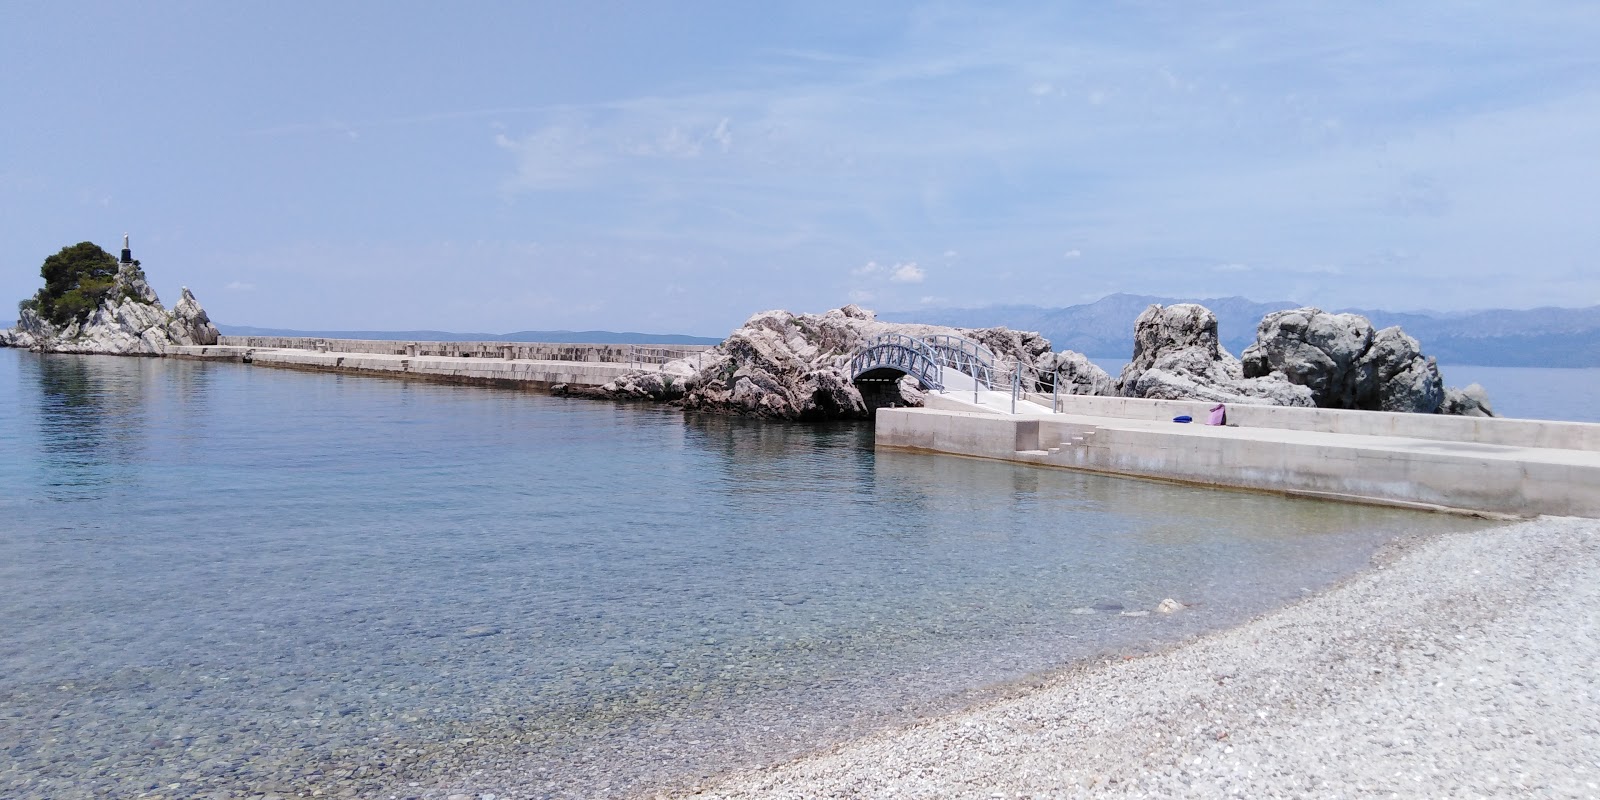 Fotografija Riba beach nahaja se v naravnem okolju